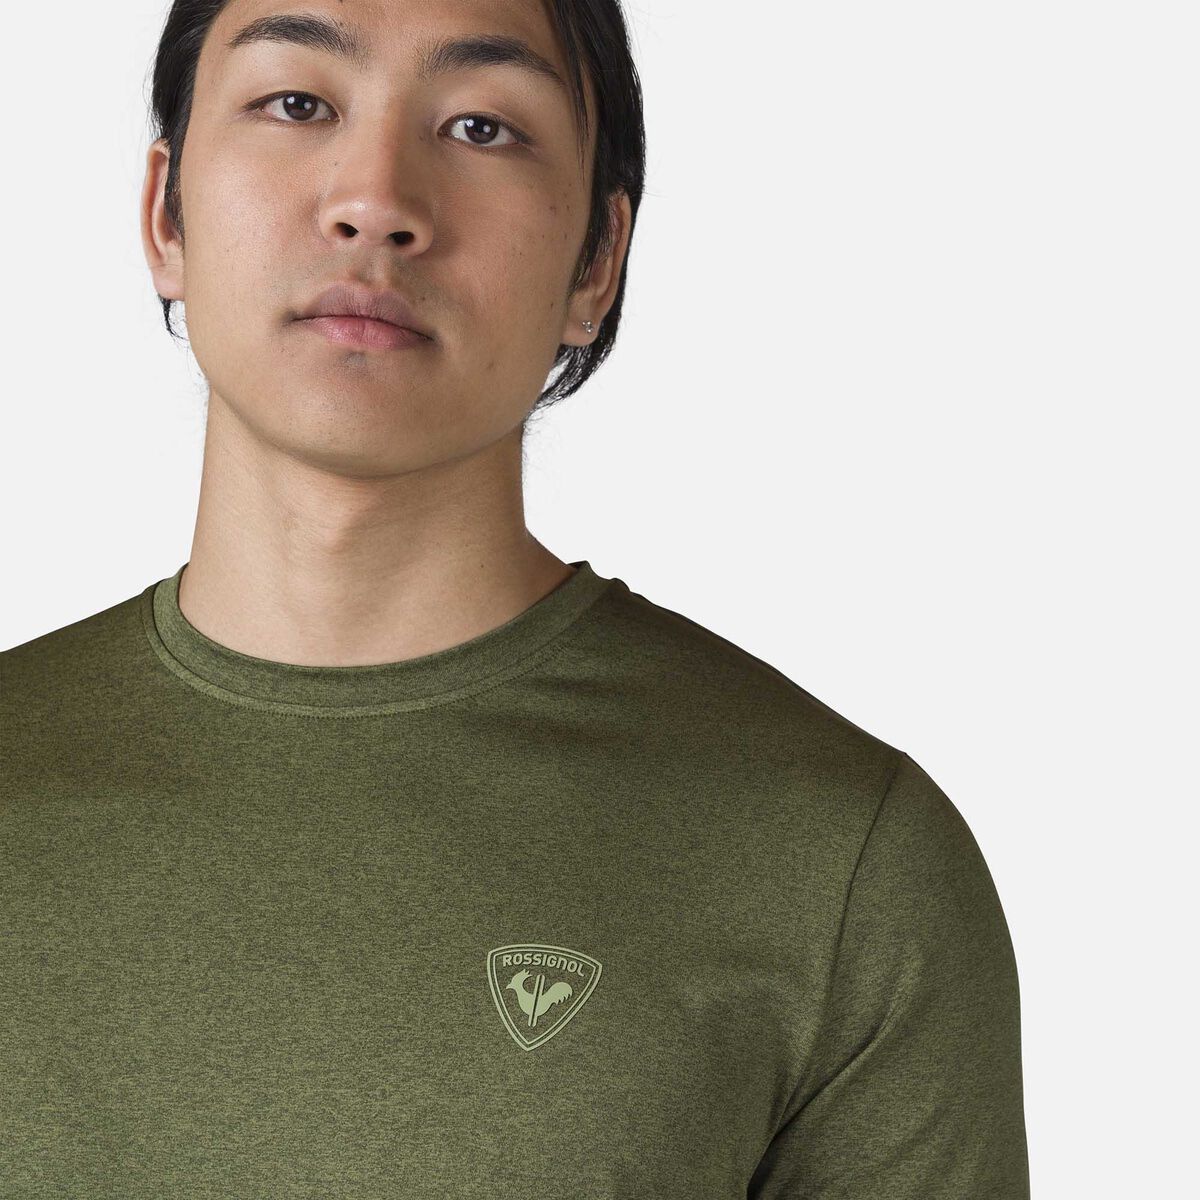 Rossignol Camiseta Slub Active para hombre green